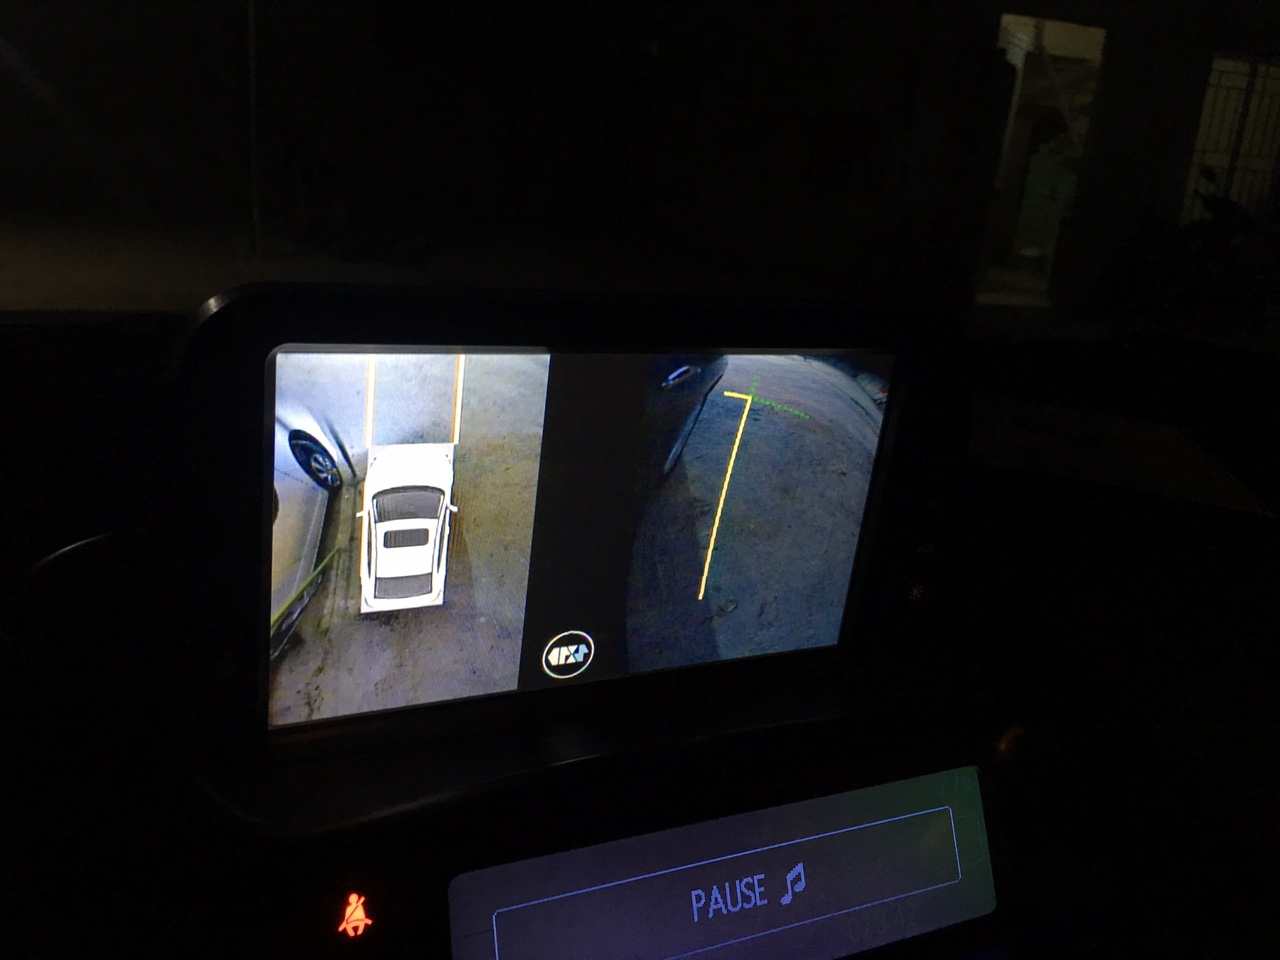 Camera 360 Oris lắp trên xe Samsung SM3 2015